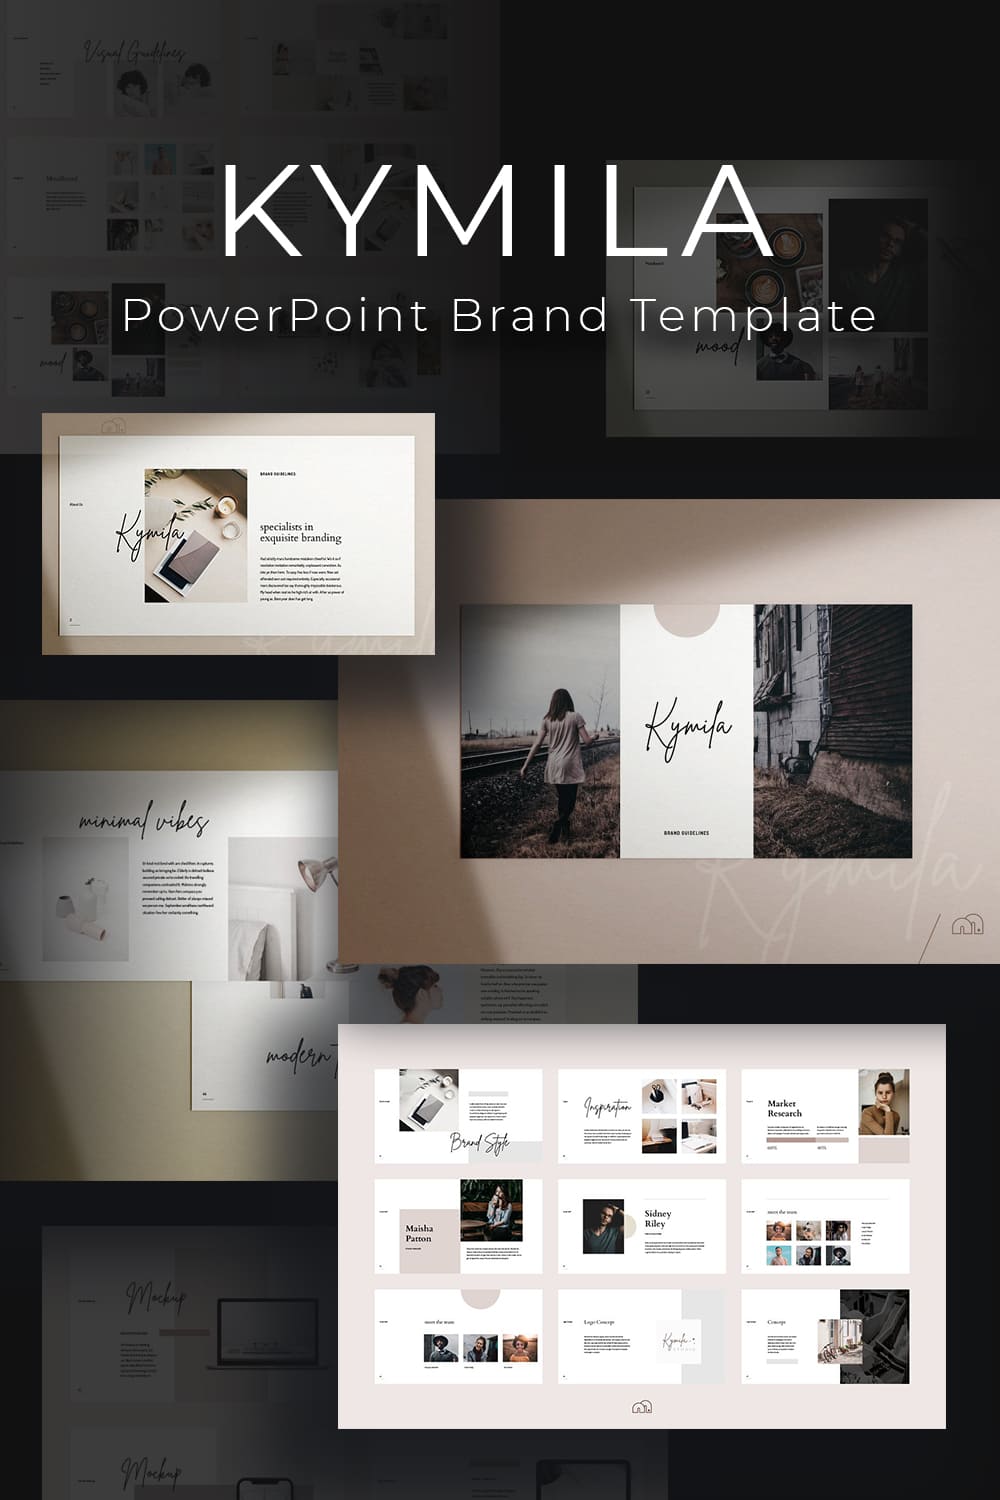 Kymila - PowerPoint Brand Template - Pinterest.